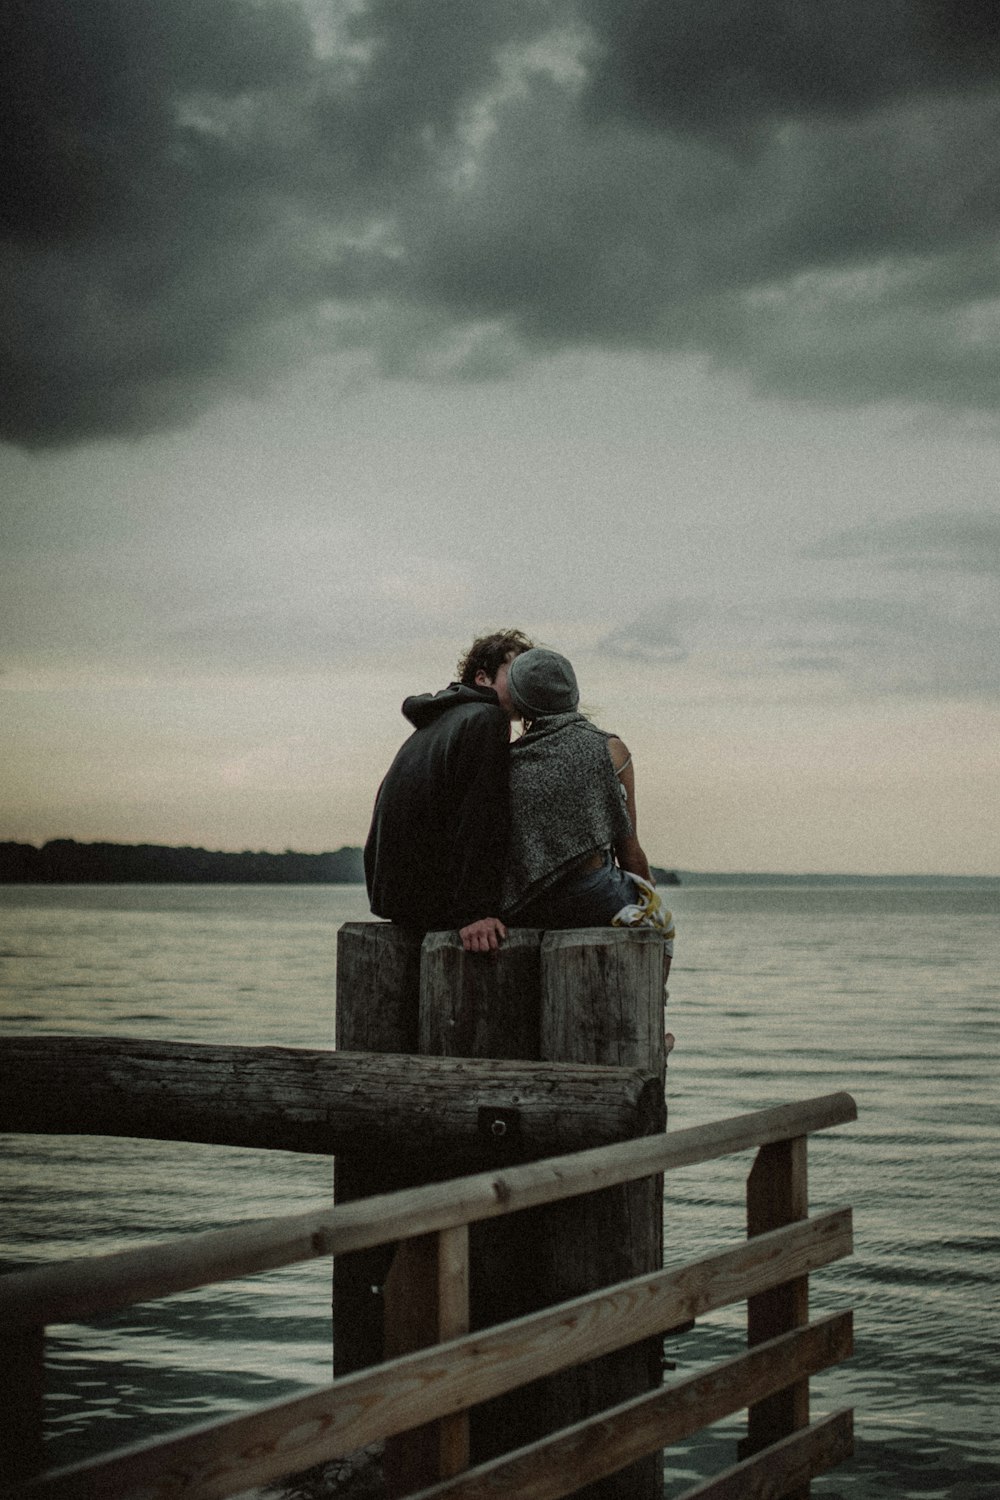 Mann und Frau sitzen und küssen sich auf einem Pfosten in der Nähe des Gewässers